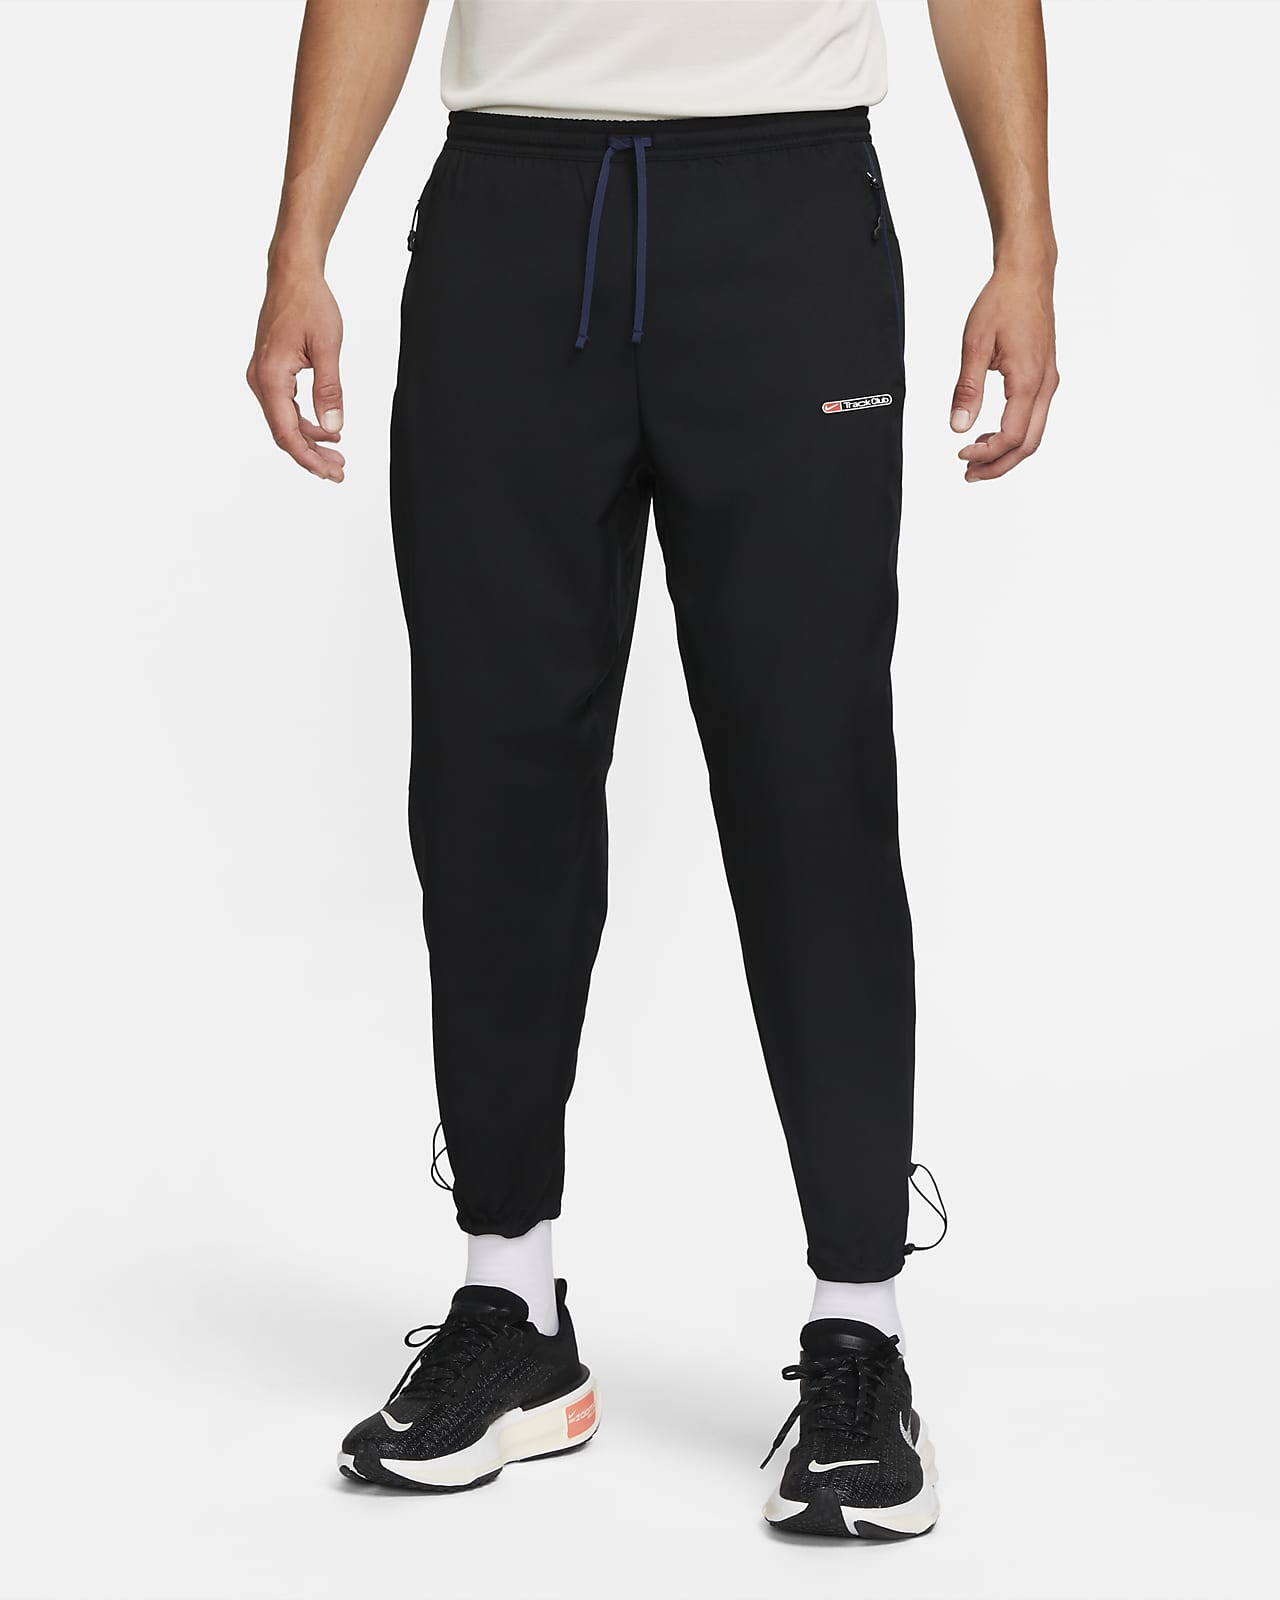 Pantalon de running Dri-FIT Nike Challenger Track Club pour homme